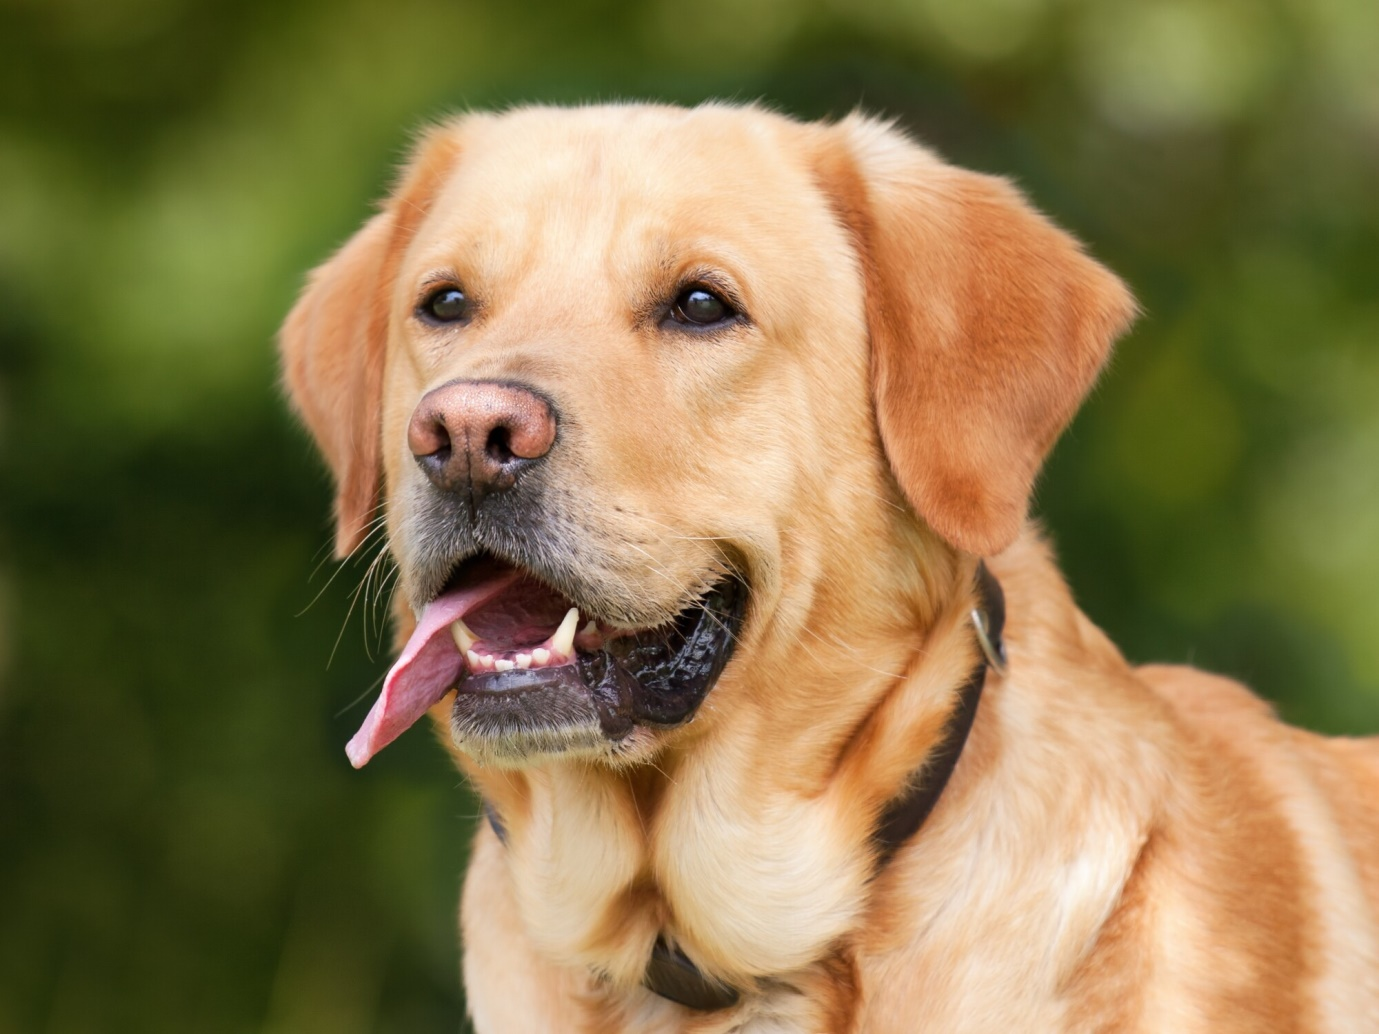 Labrador Retriever vs Golden Retriever: What Are the Differences?